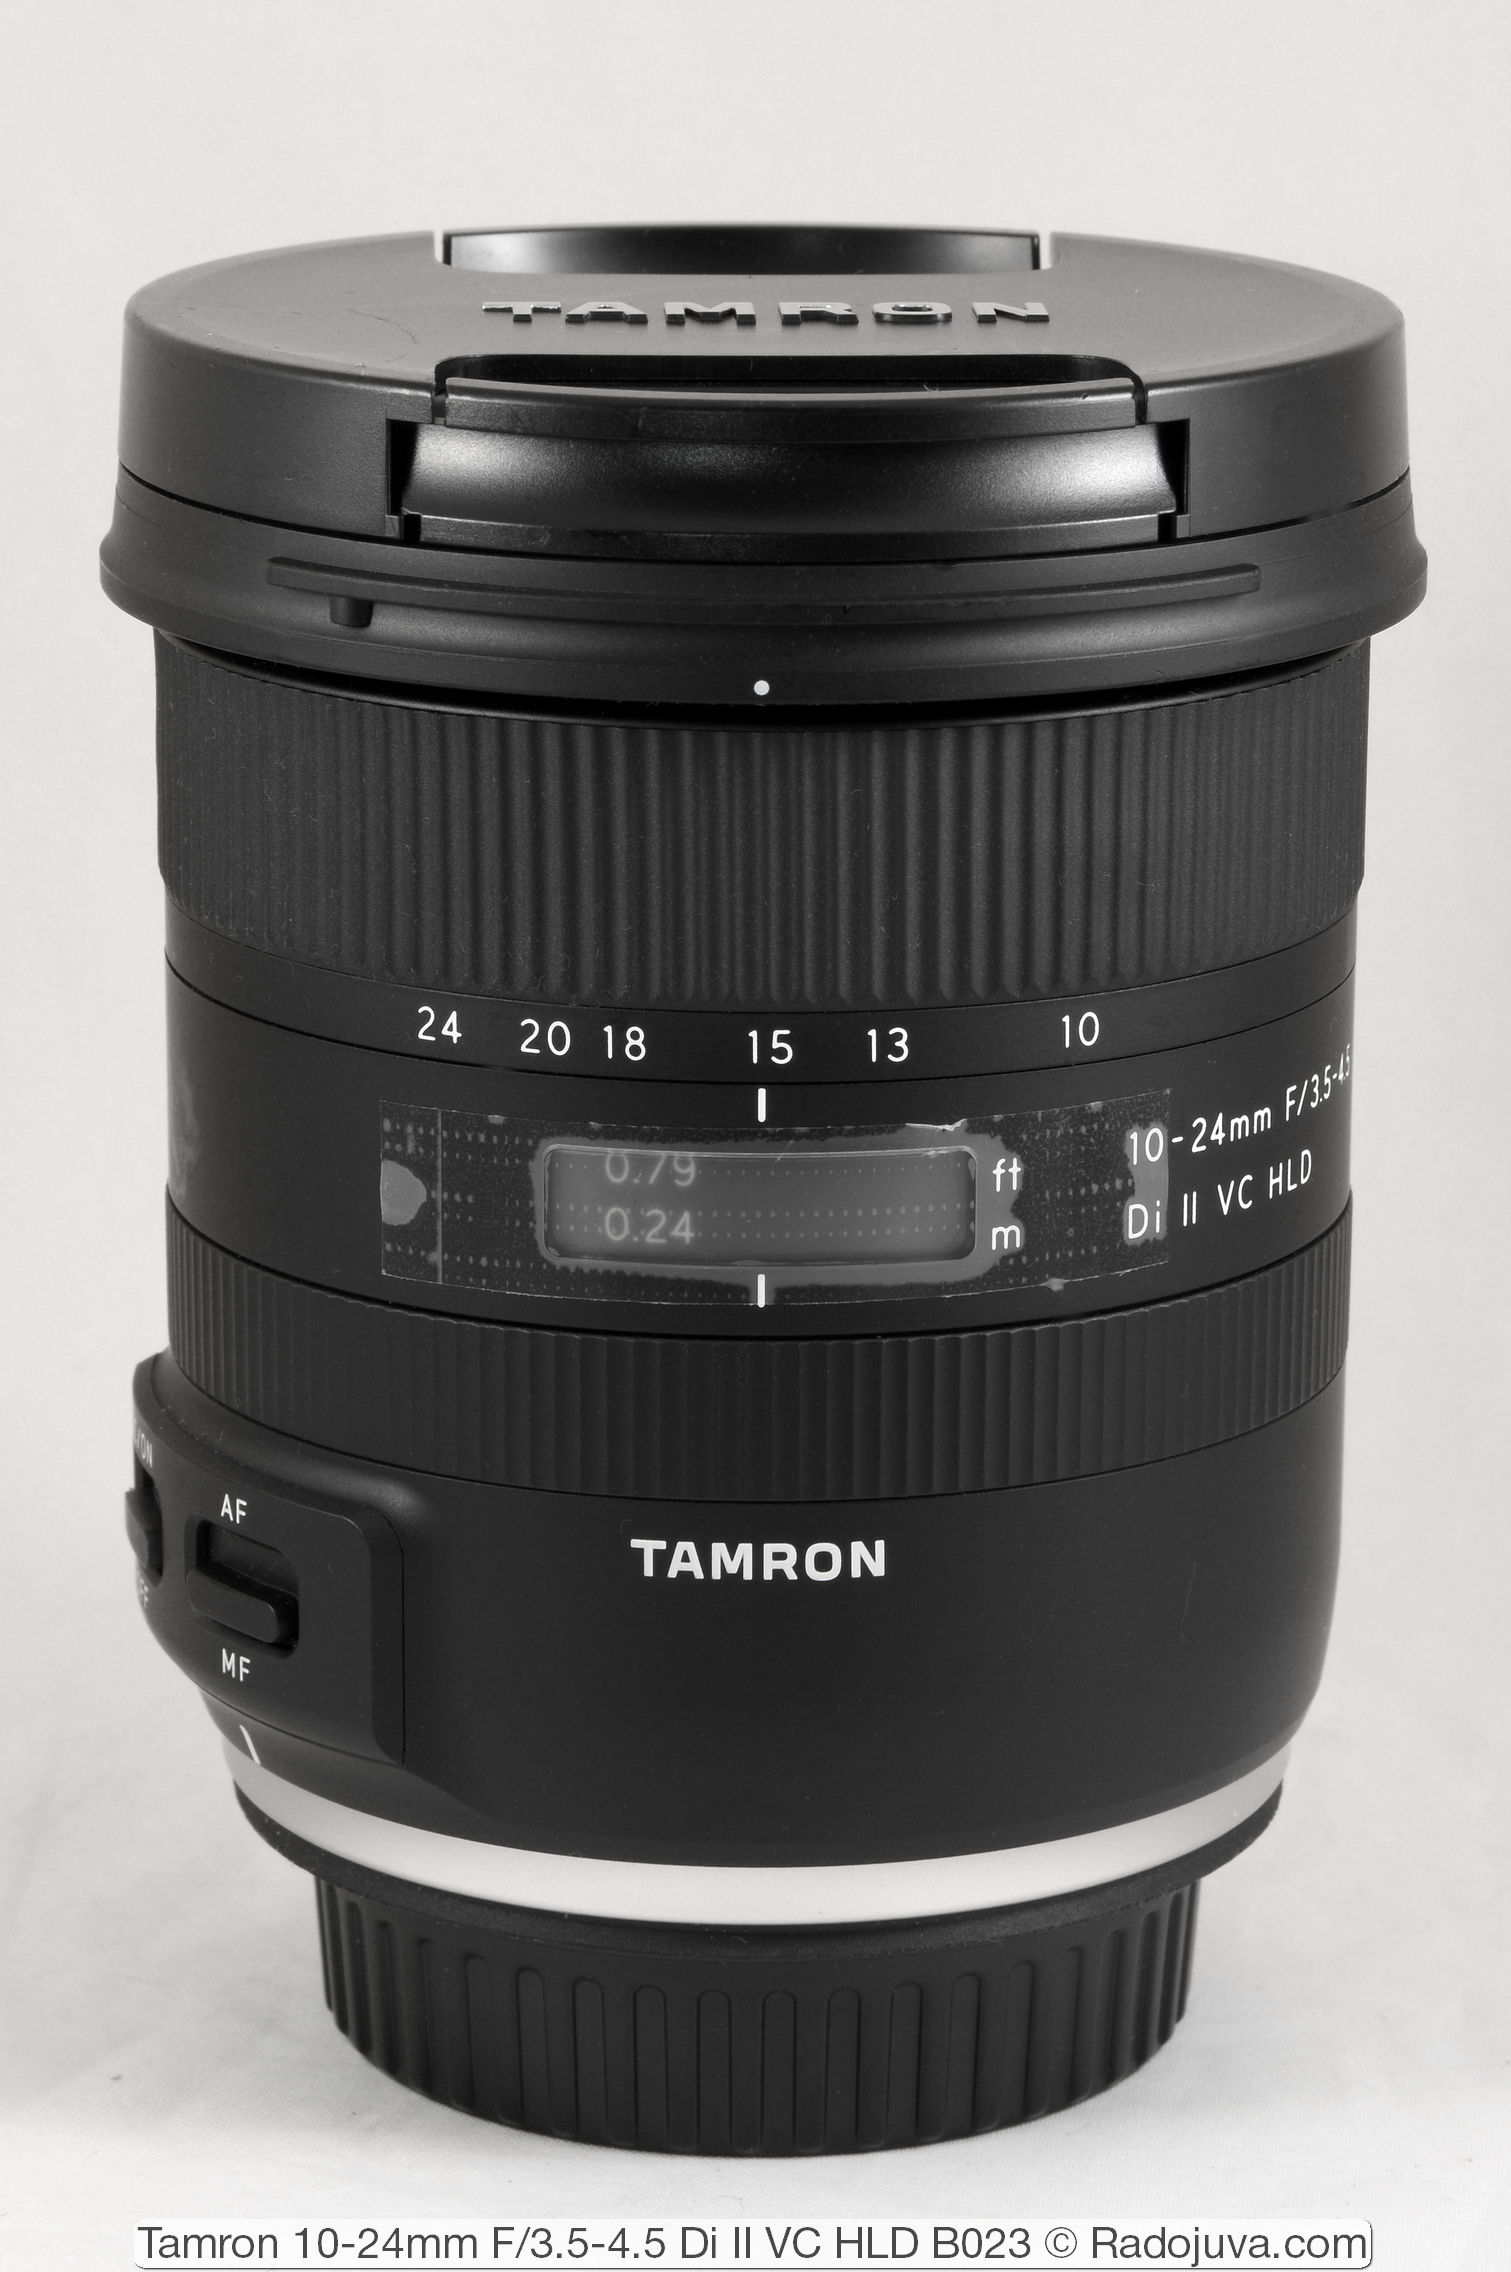 Tamron 10-24mm F / 3.5-4.5 Di II VC HLD B023